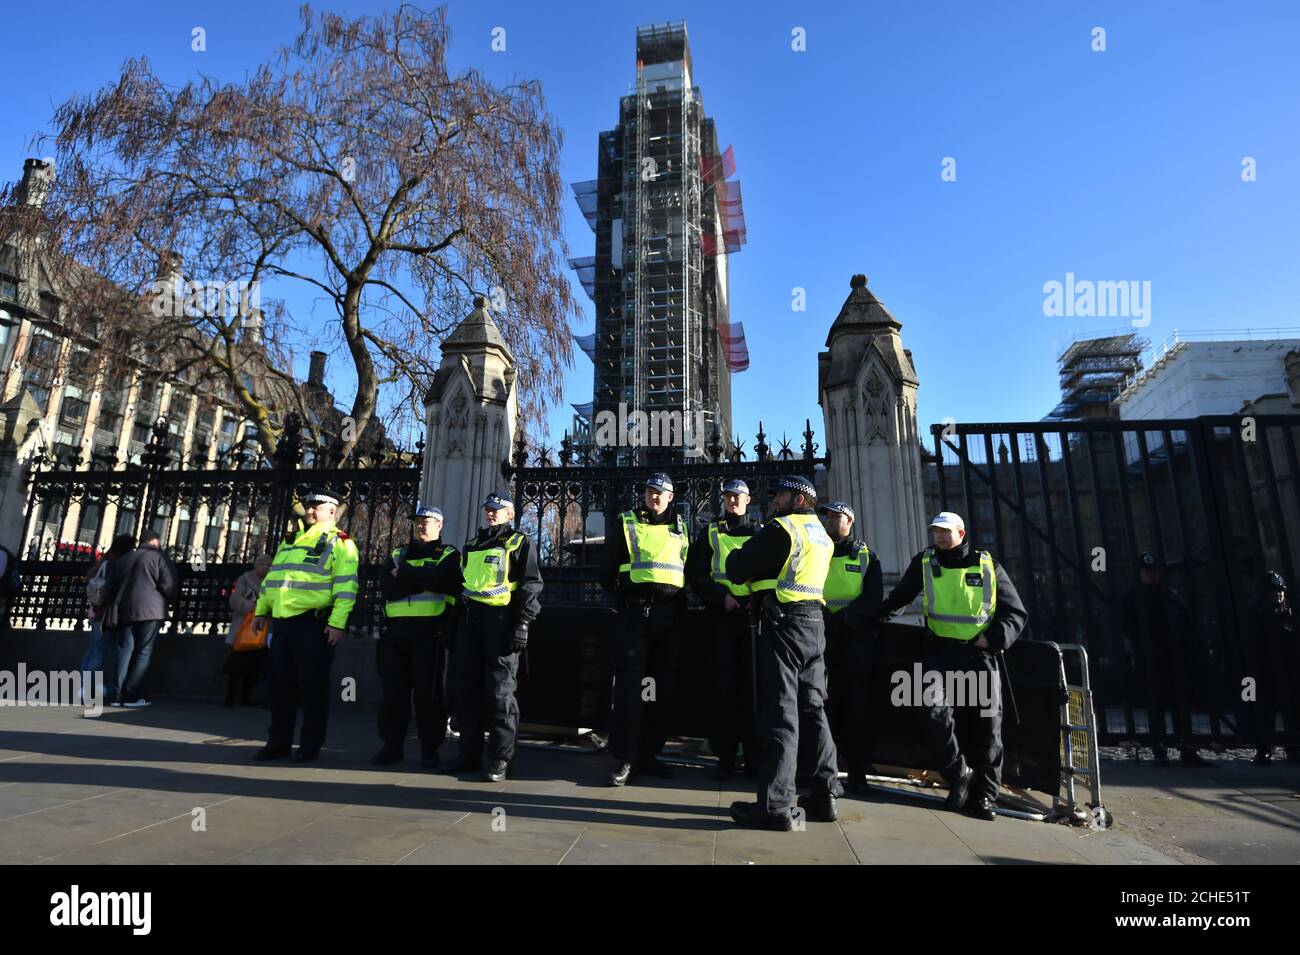 Gli ufficiali della polizia metropolitana si trovano fuori dal Parlamento di Londra, poiché la polizia vicino al Parlamento è stata "informata di intervenire in modo appropriato" se la legge viene violata dopo che l'onorevole Soubry li ha accusati di ignorare gli abusi perpetrati contro politici e giornalisti. Foto Stock